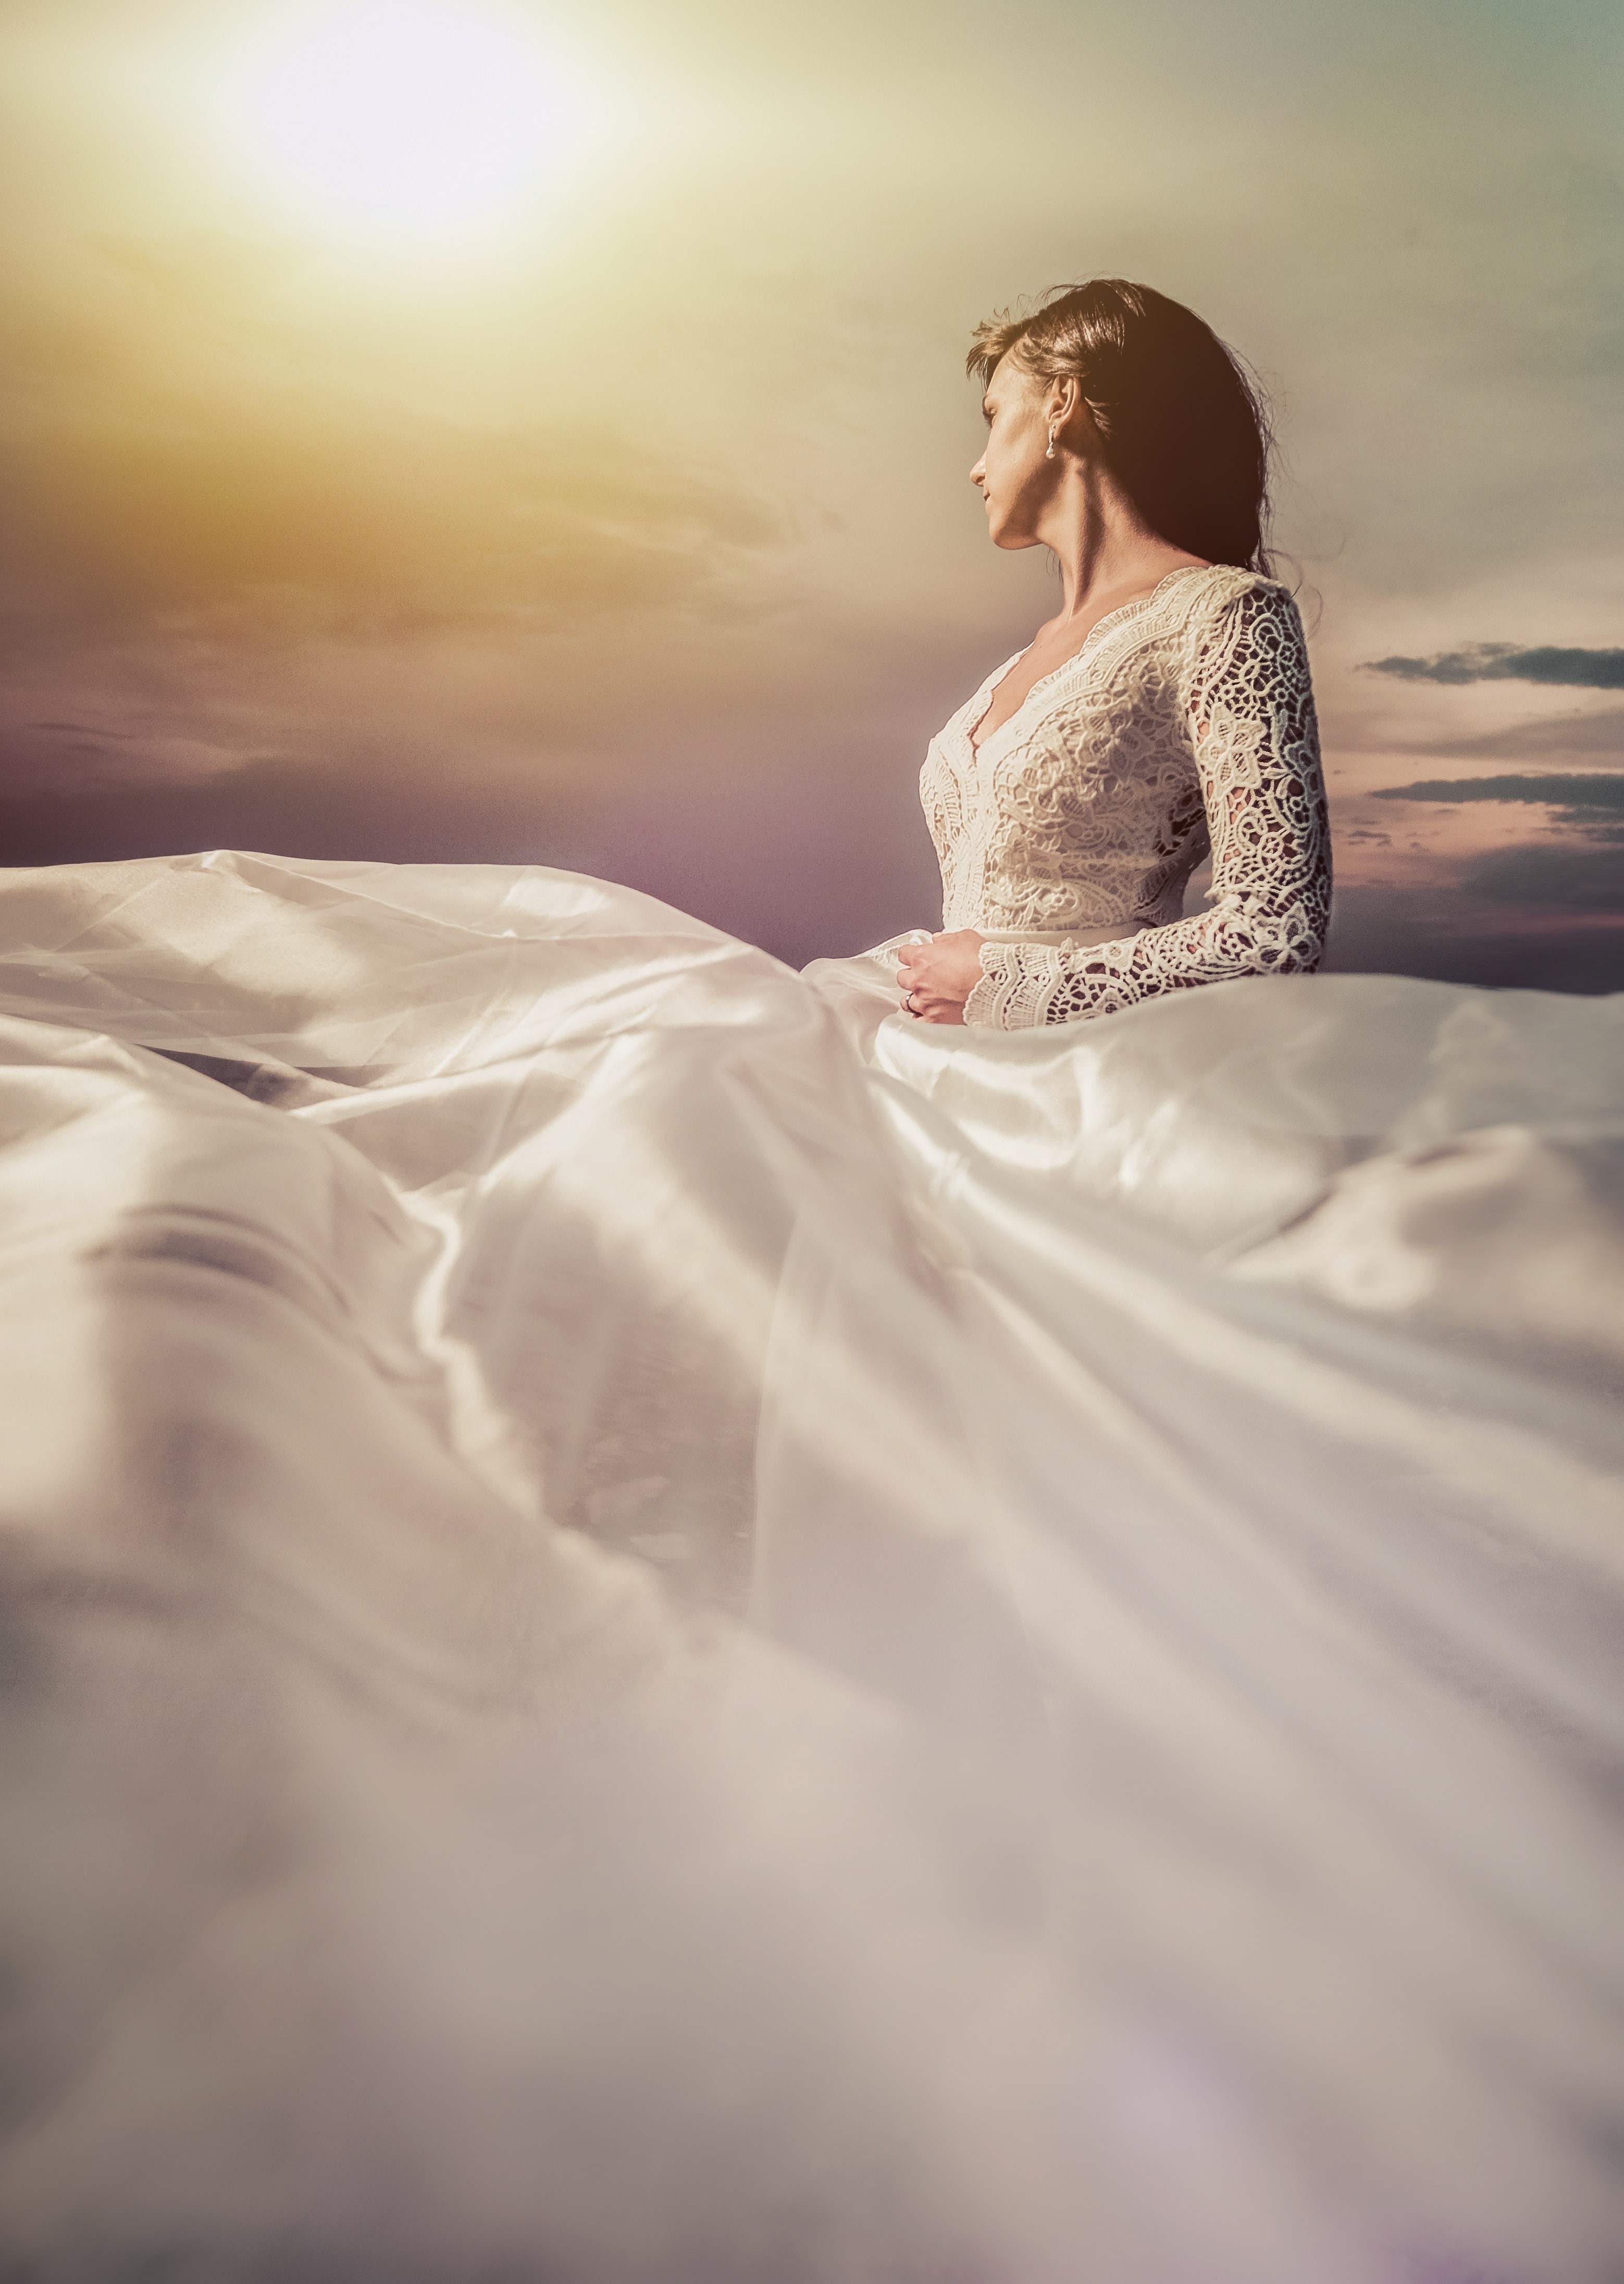 К чему снится свадебное платье белого цвета на себе? И другие толкования про наряд невесты.